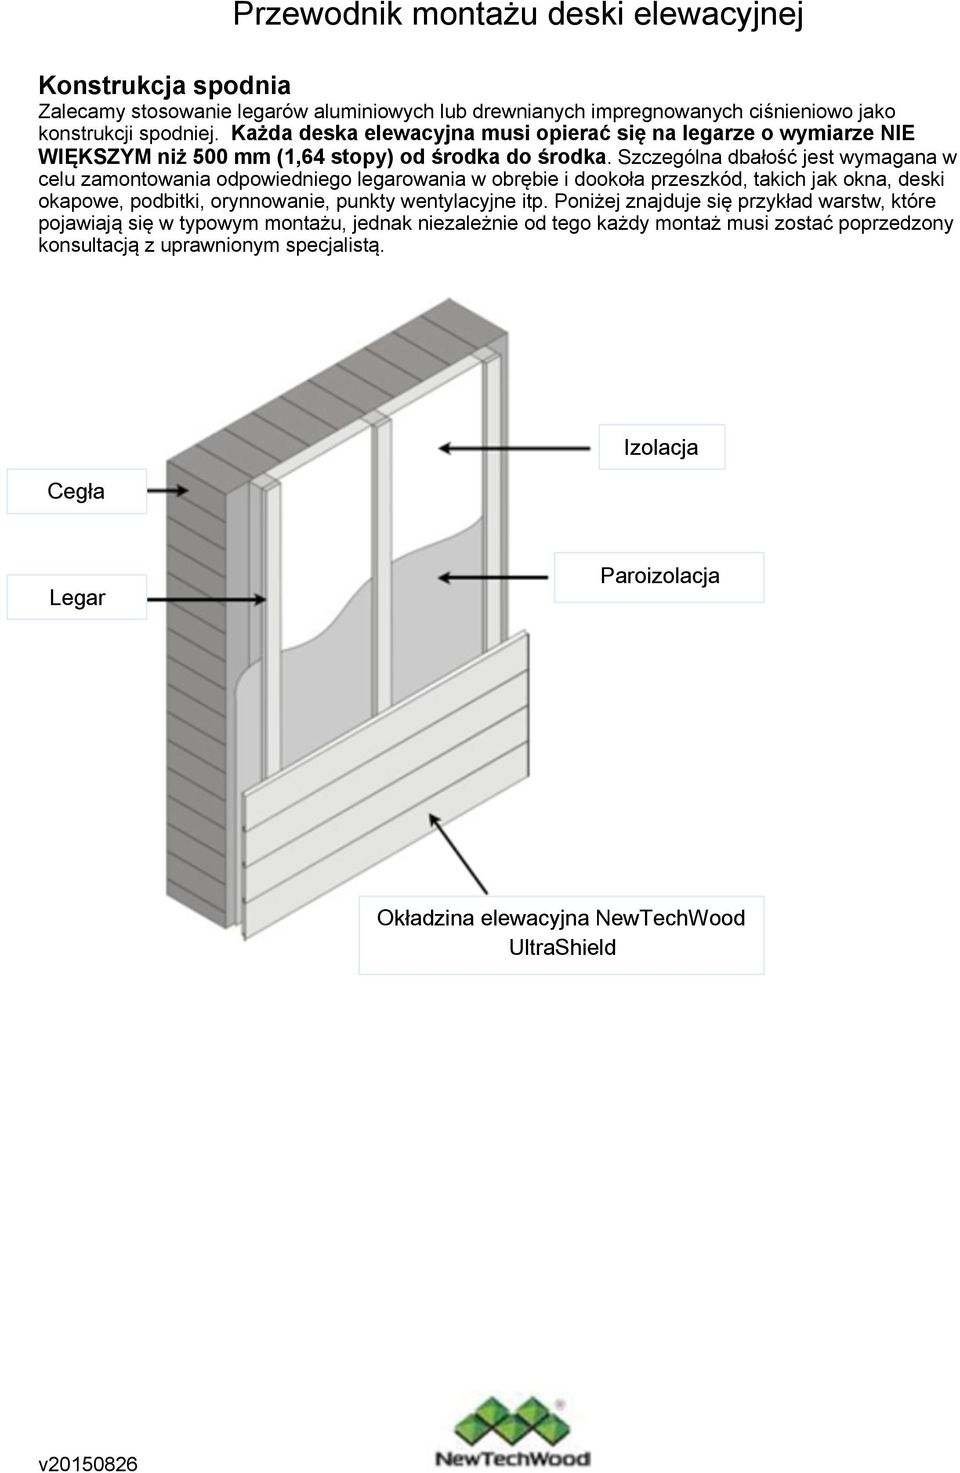 Szczególna dbałość jest wymagana w celu zamontowania odpowiedniego legarowania w obrębie i dookoła przeszkód, takich jak okna, deski okapowe, podbitki, orynnowanie, punkty